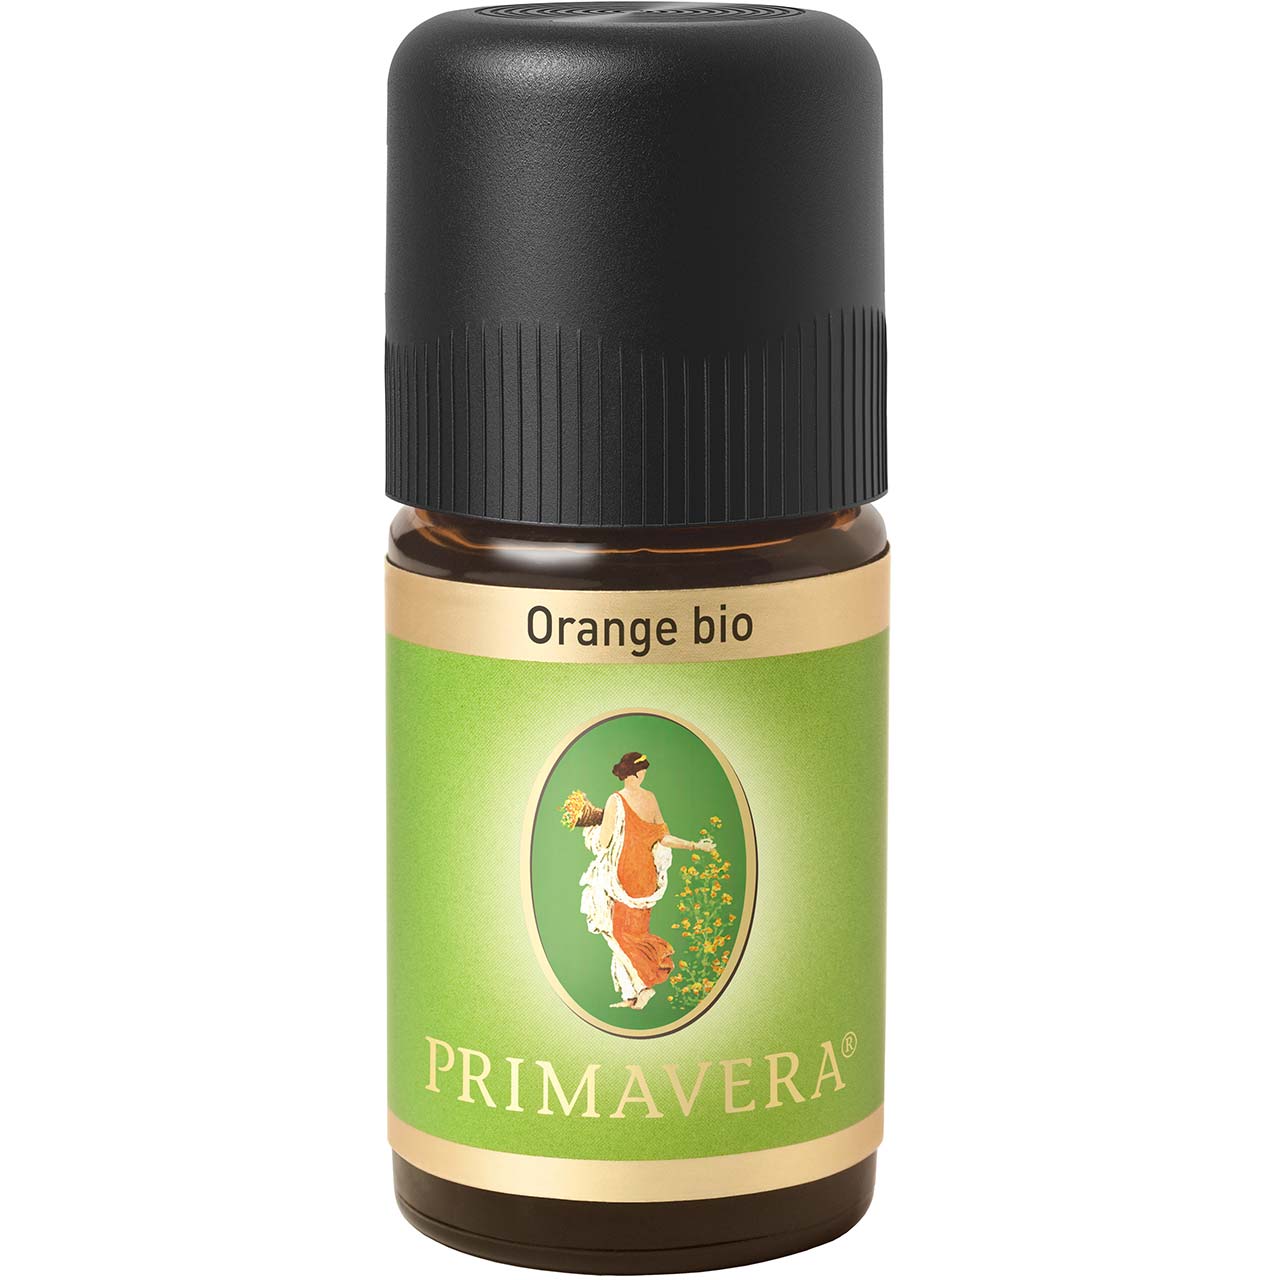 Orange bio 5ml - 100% ätherisches Öl